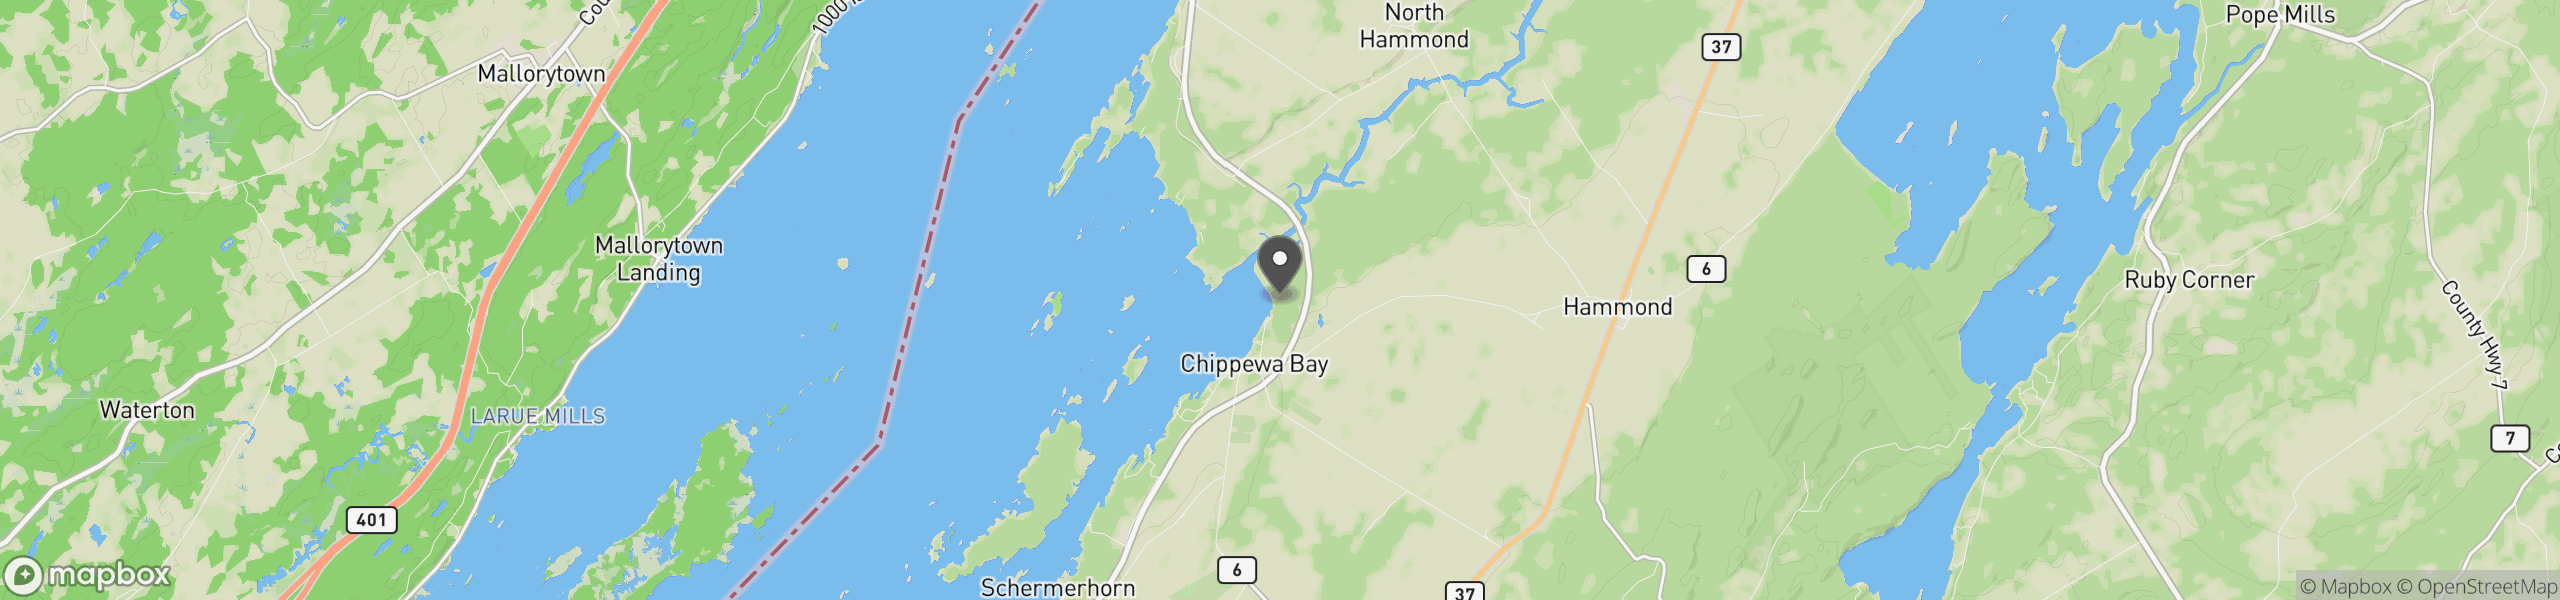 Chippewa Bay, NY